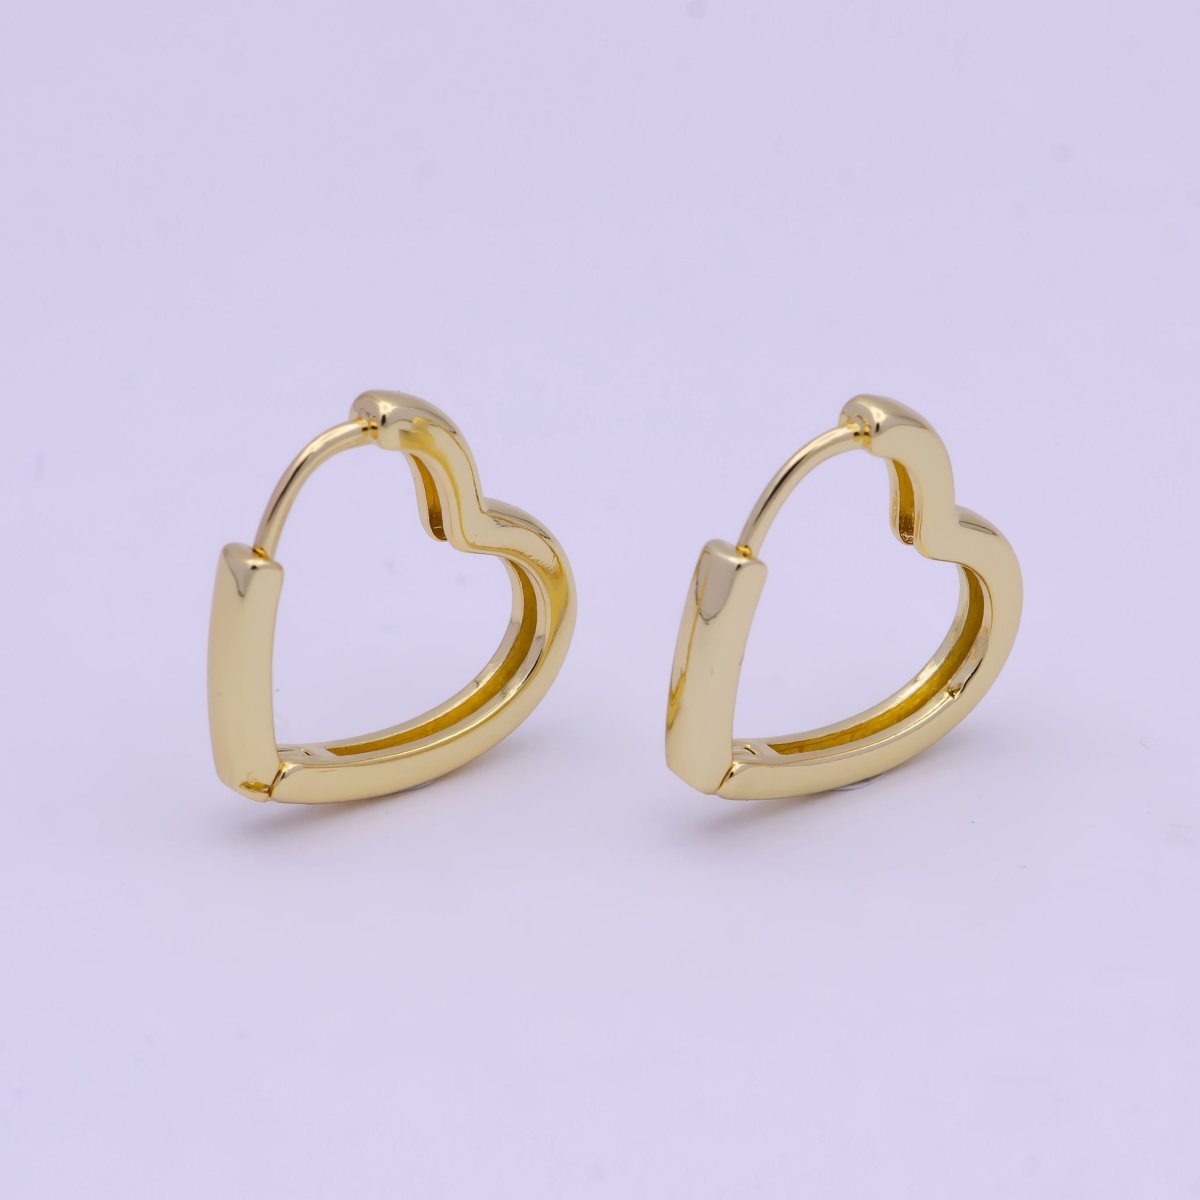 OS Dainty heart Hoop Earring, Dainty heart huggie Hoop Earring, Tiny heart hoops Minimalist Jewelry in 14k Gold Filled Q-012 - DLUXCA